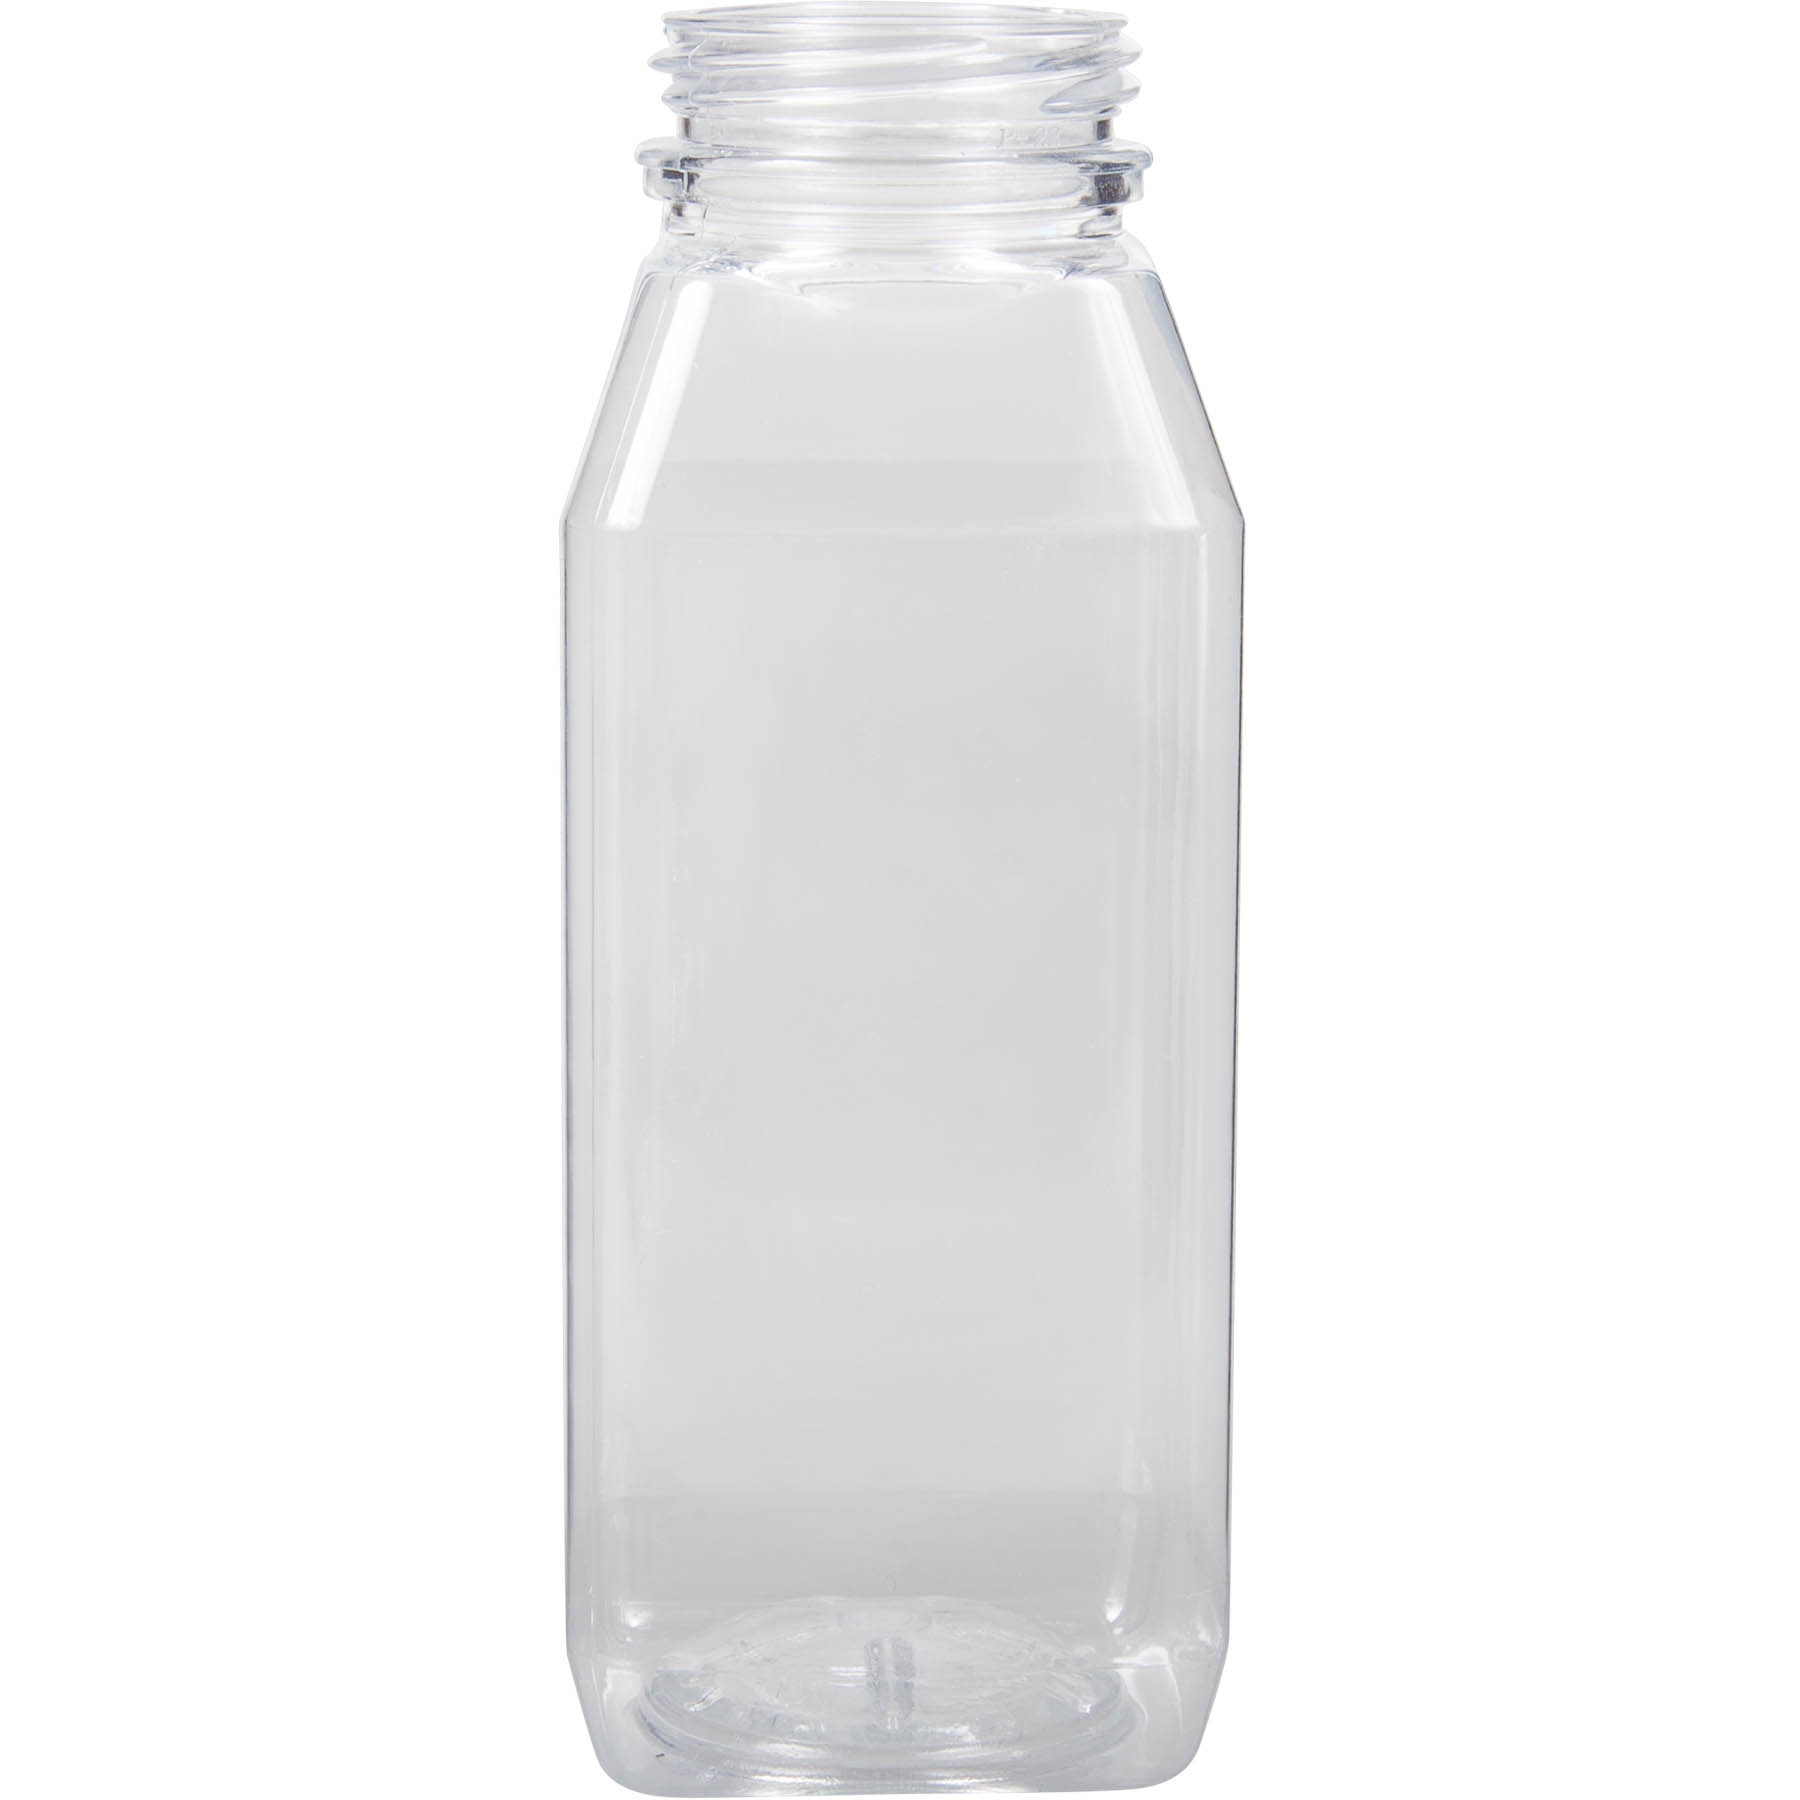 Jersey Bottle Plastic Juice Bottle, PET16WH, Square PET, 16 oz